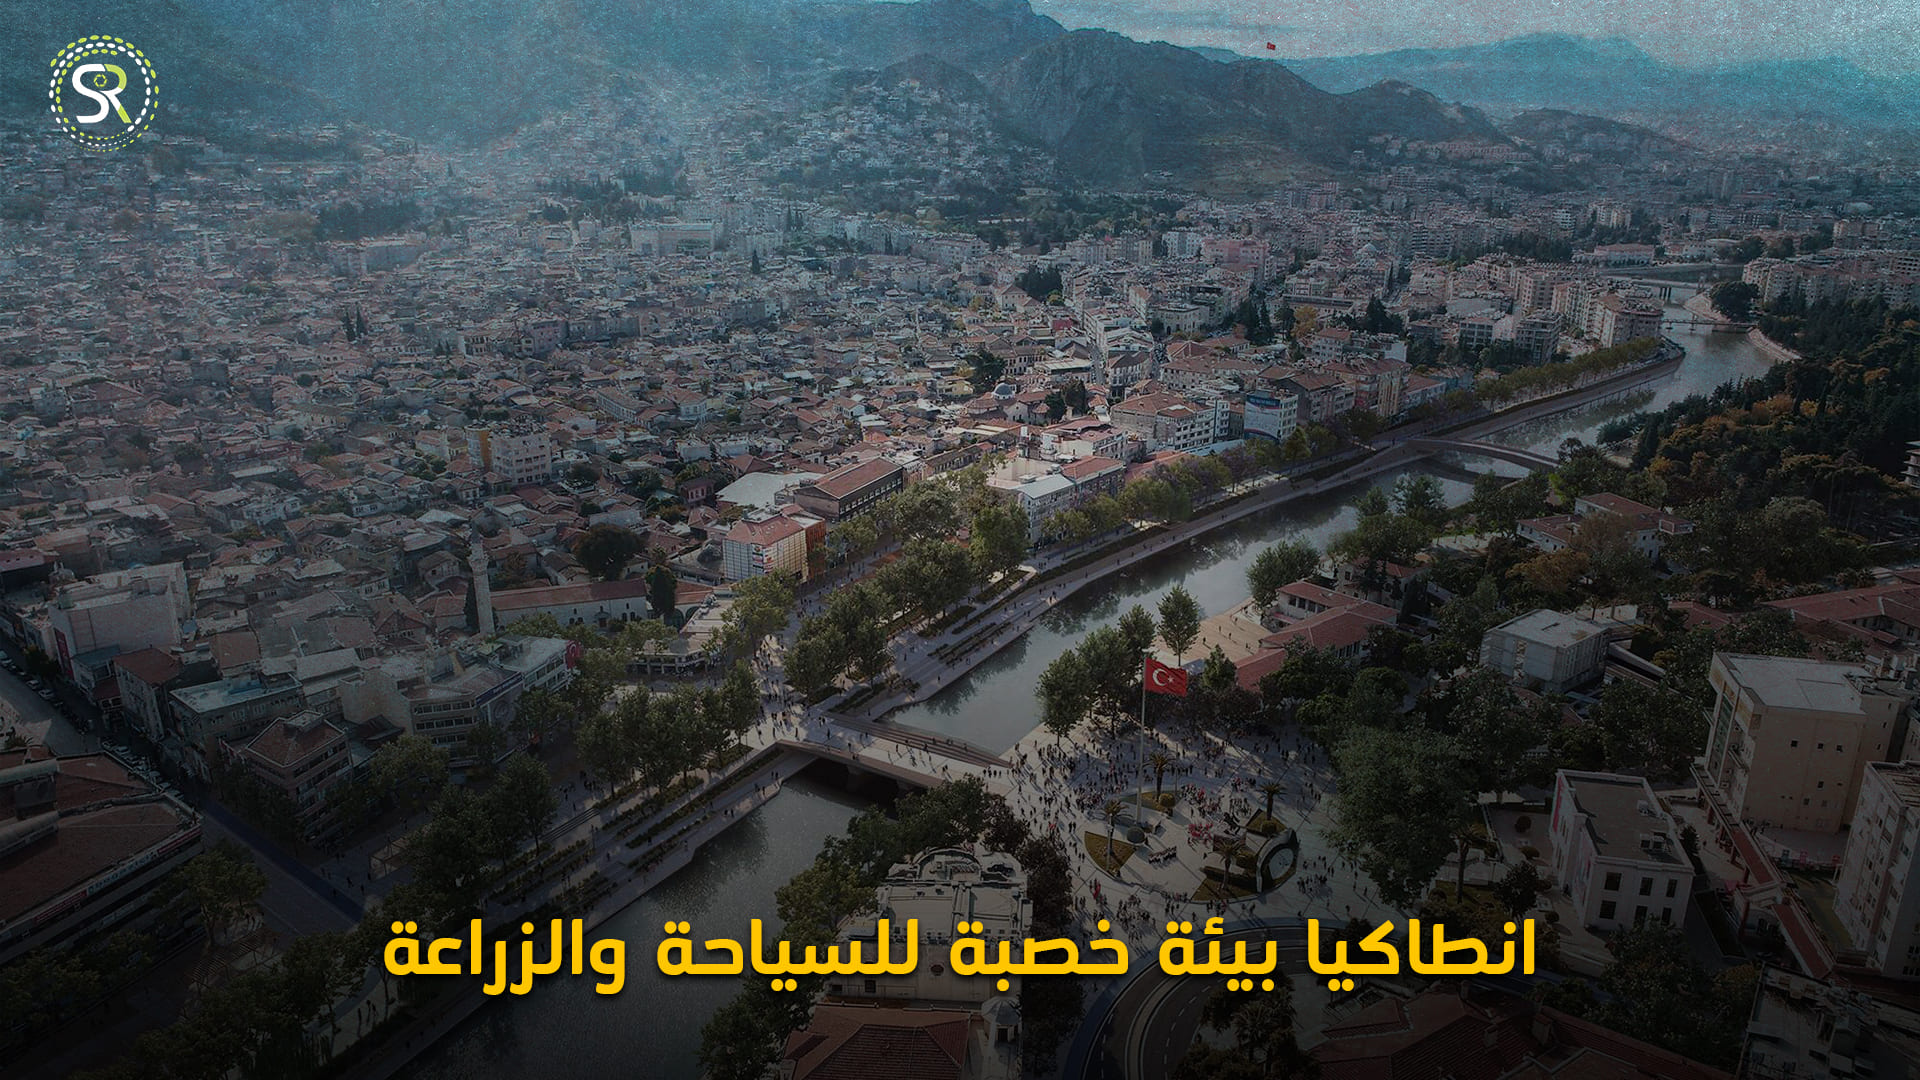 مدينة أنطاكيا التركيَّة وما تتميَّز به